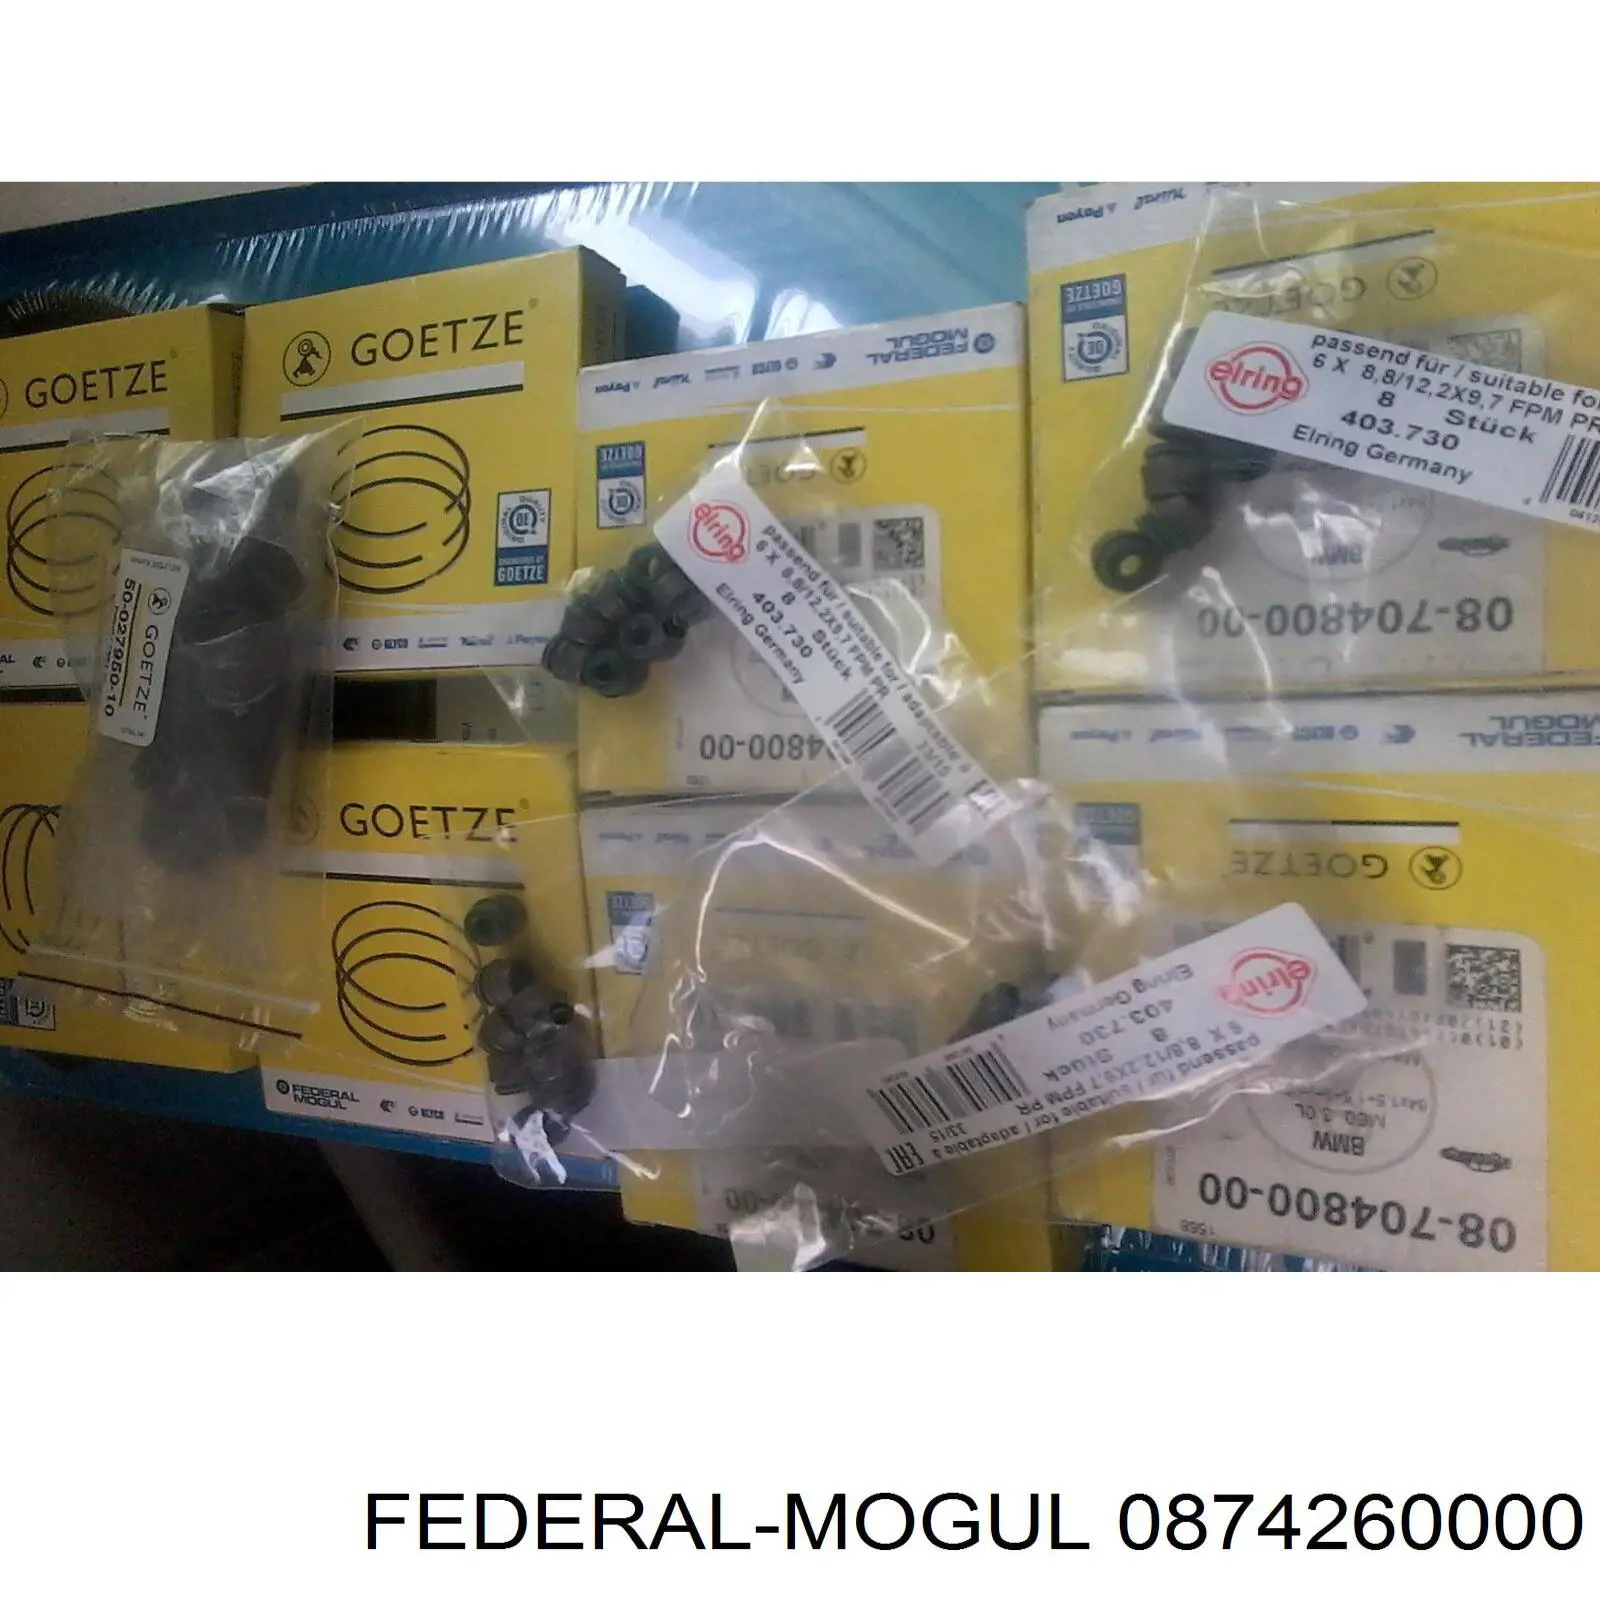 08-742600-00 Federal Mogul кольца поршневые компрессора на 1 цилиндр, std